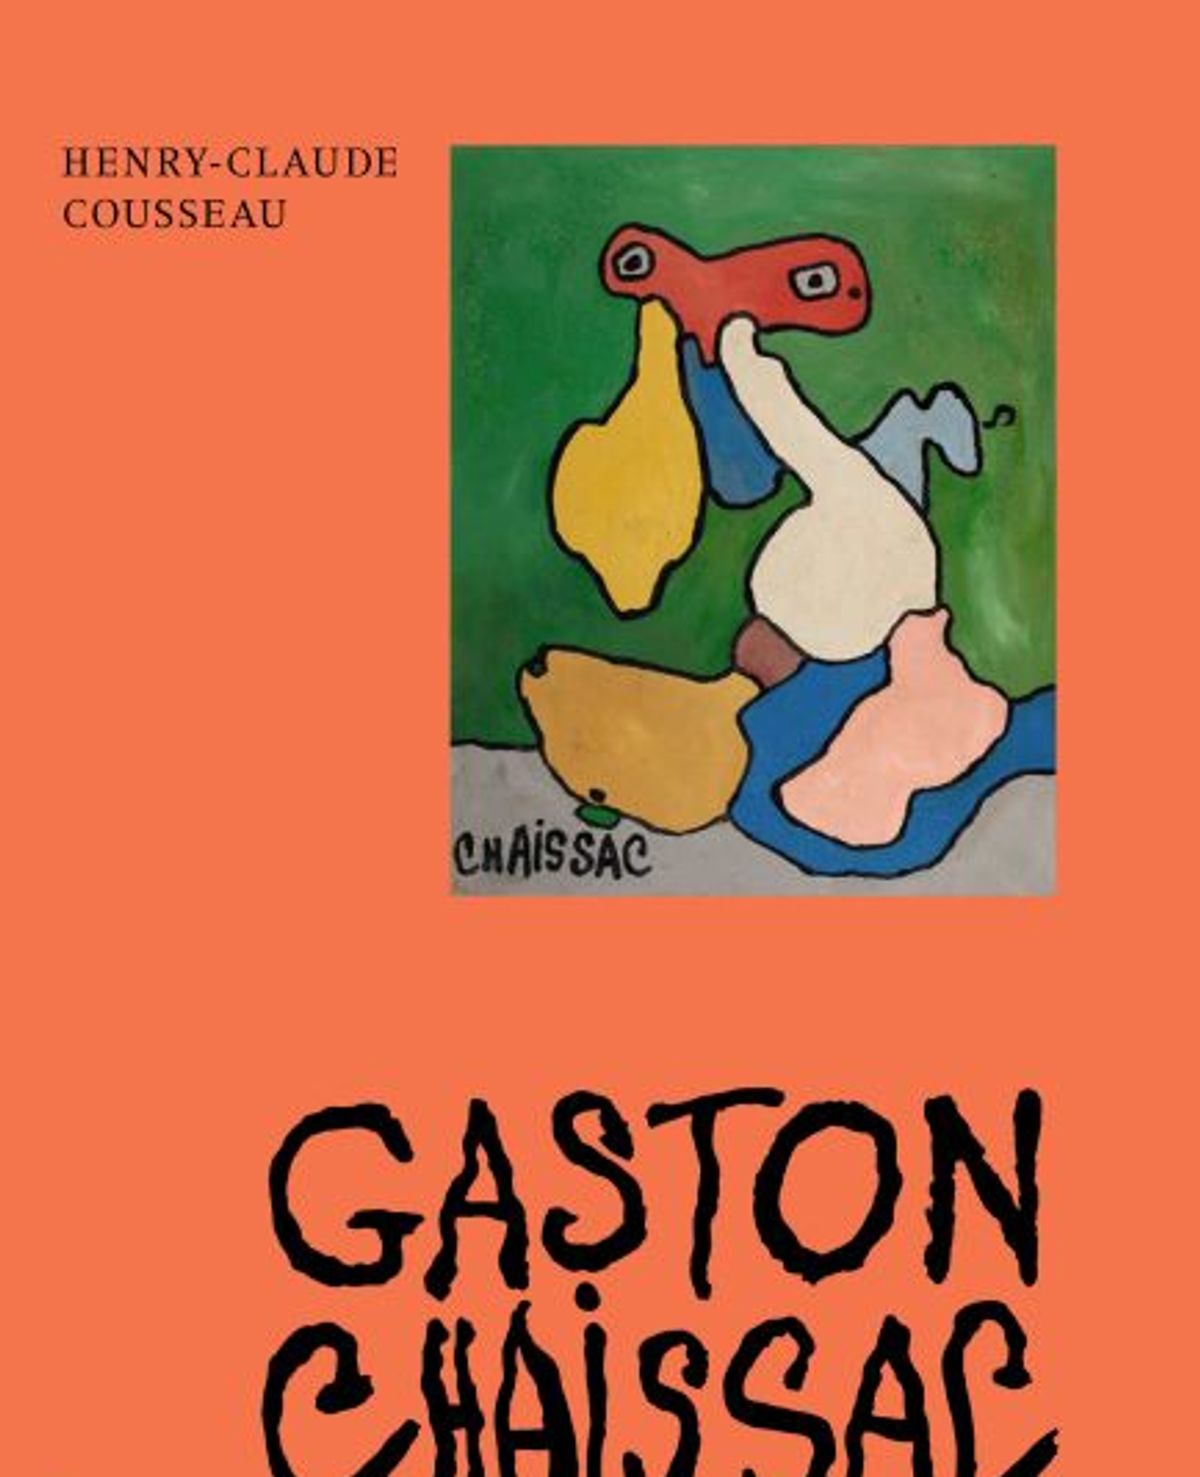 Henry-Claude Cousseau, Gaston Chaissac, Paris, Flammarion, 2022, 320 pages, 70 euros.